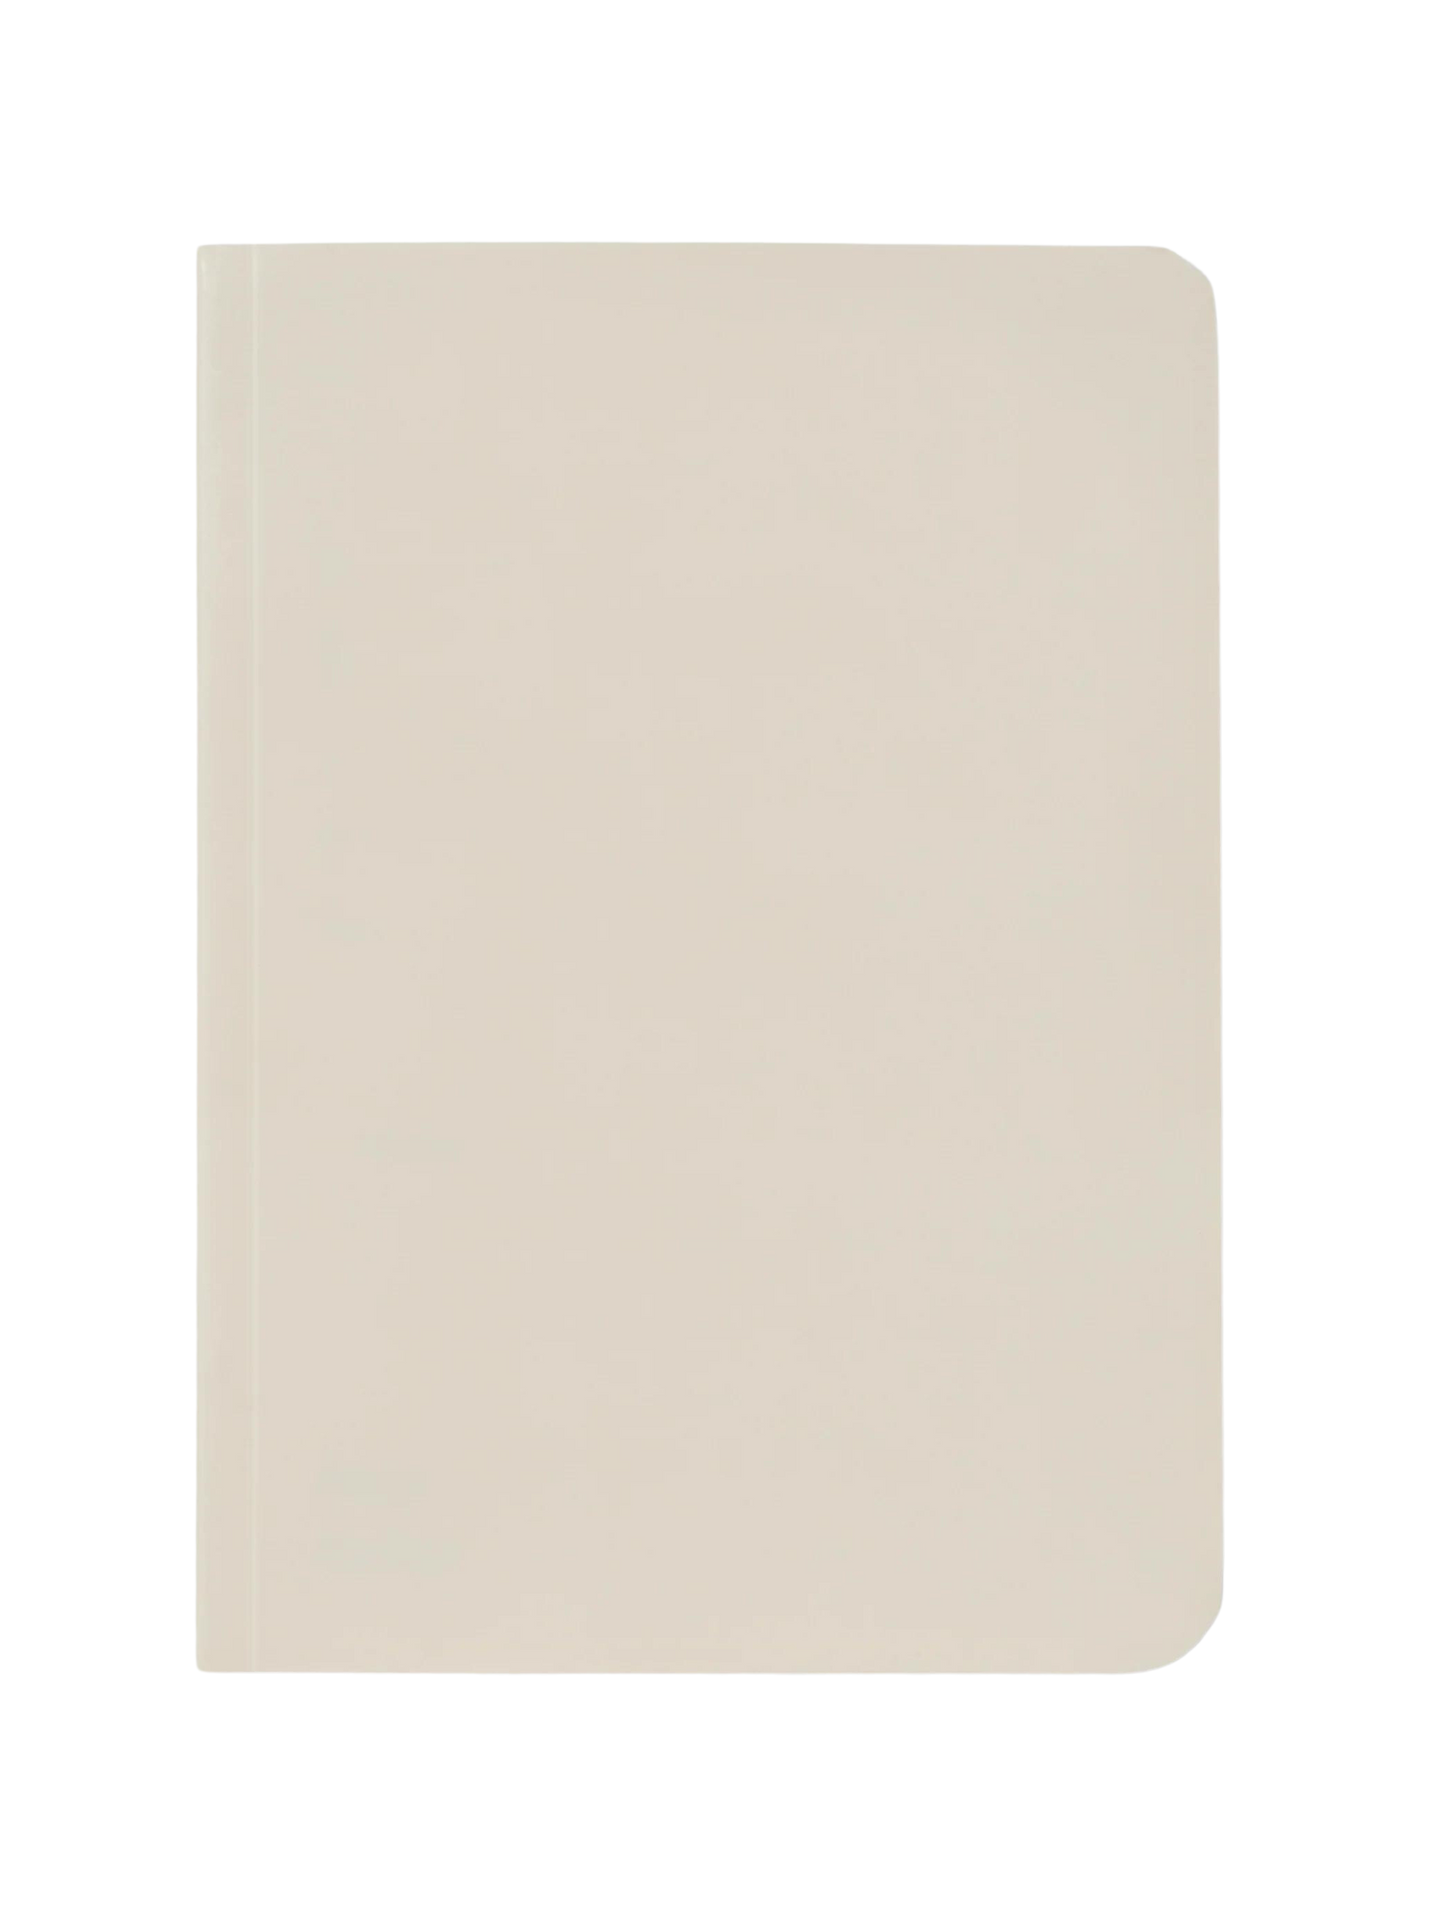 Pocket Journal Woodlesspaper